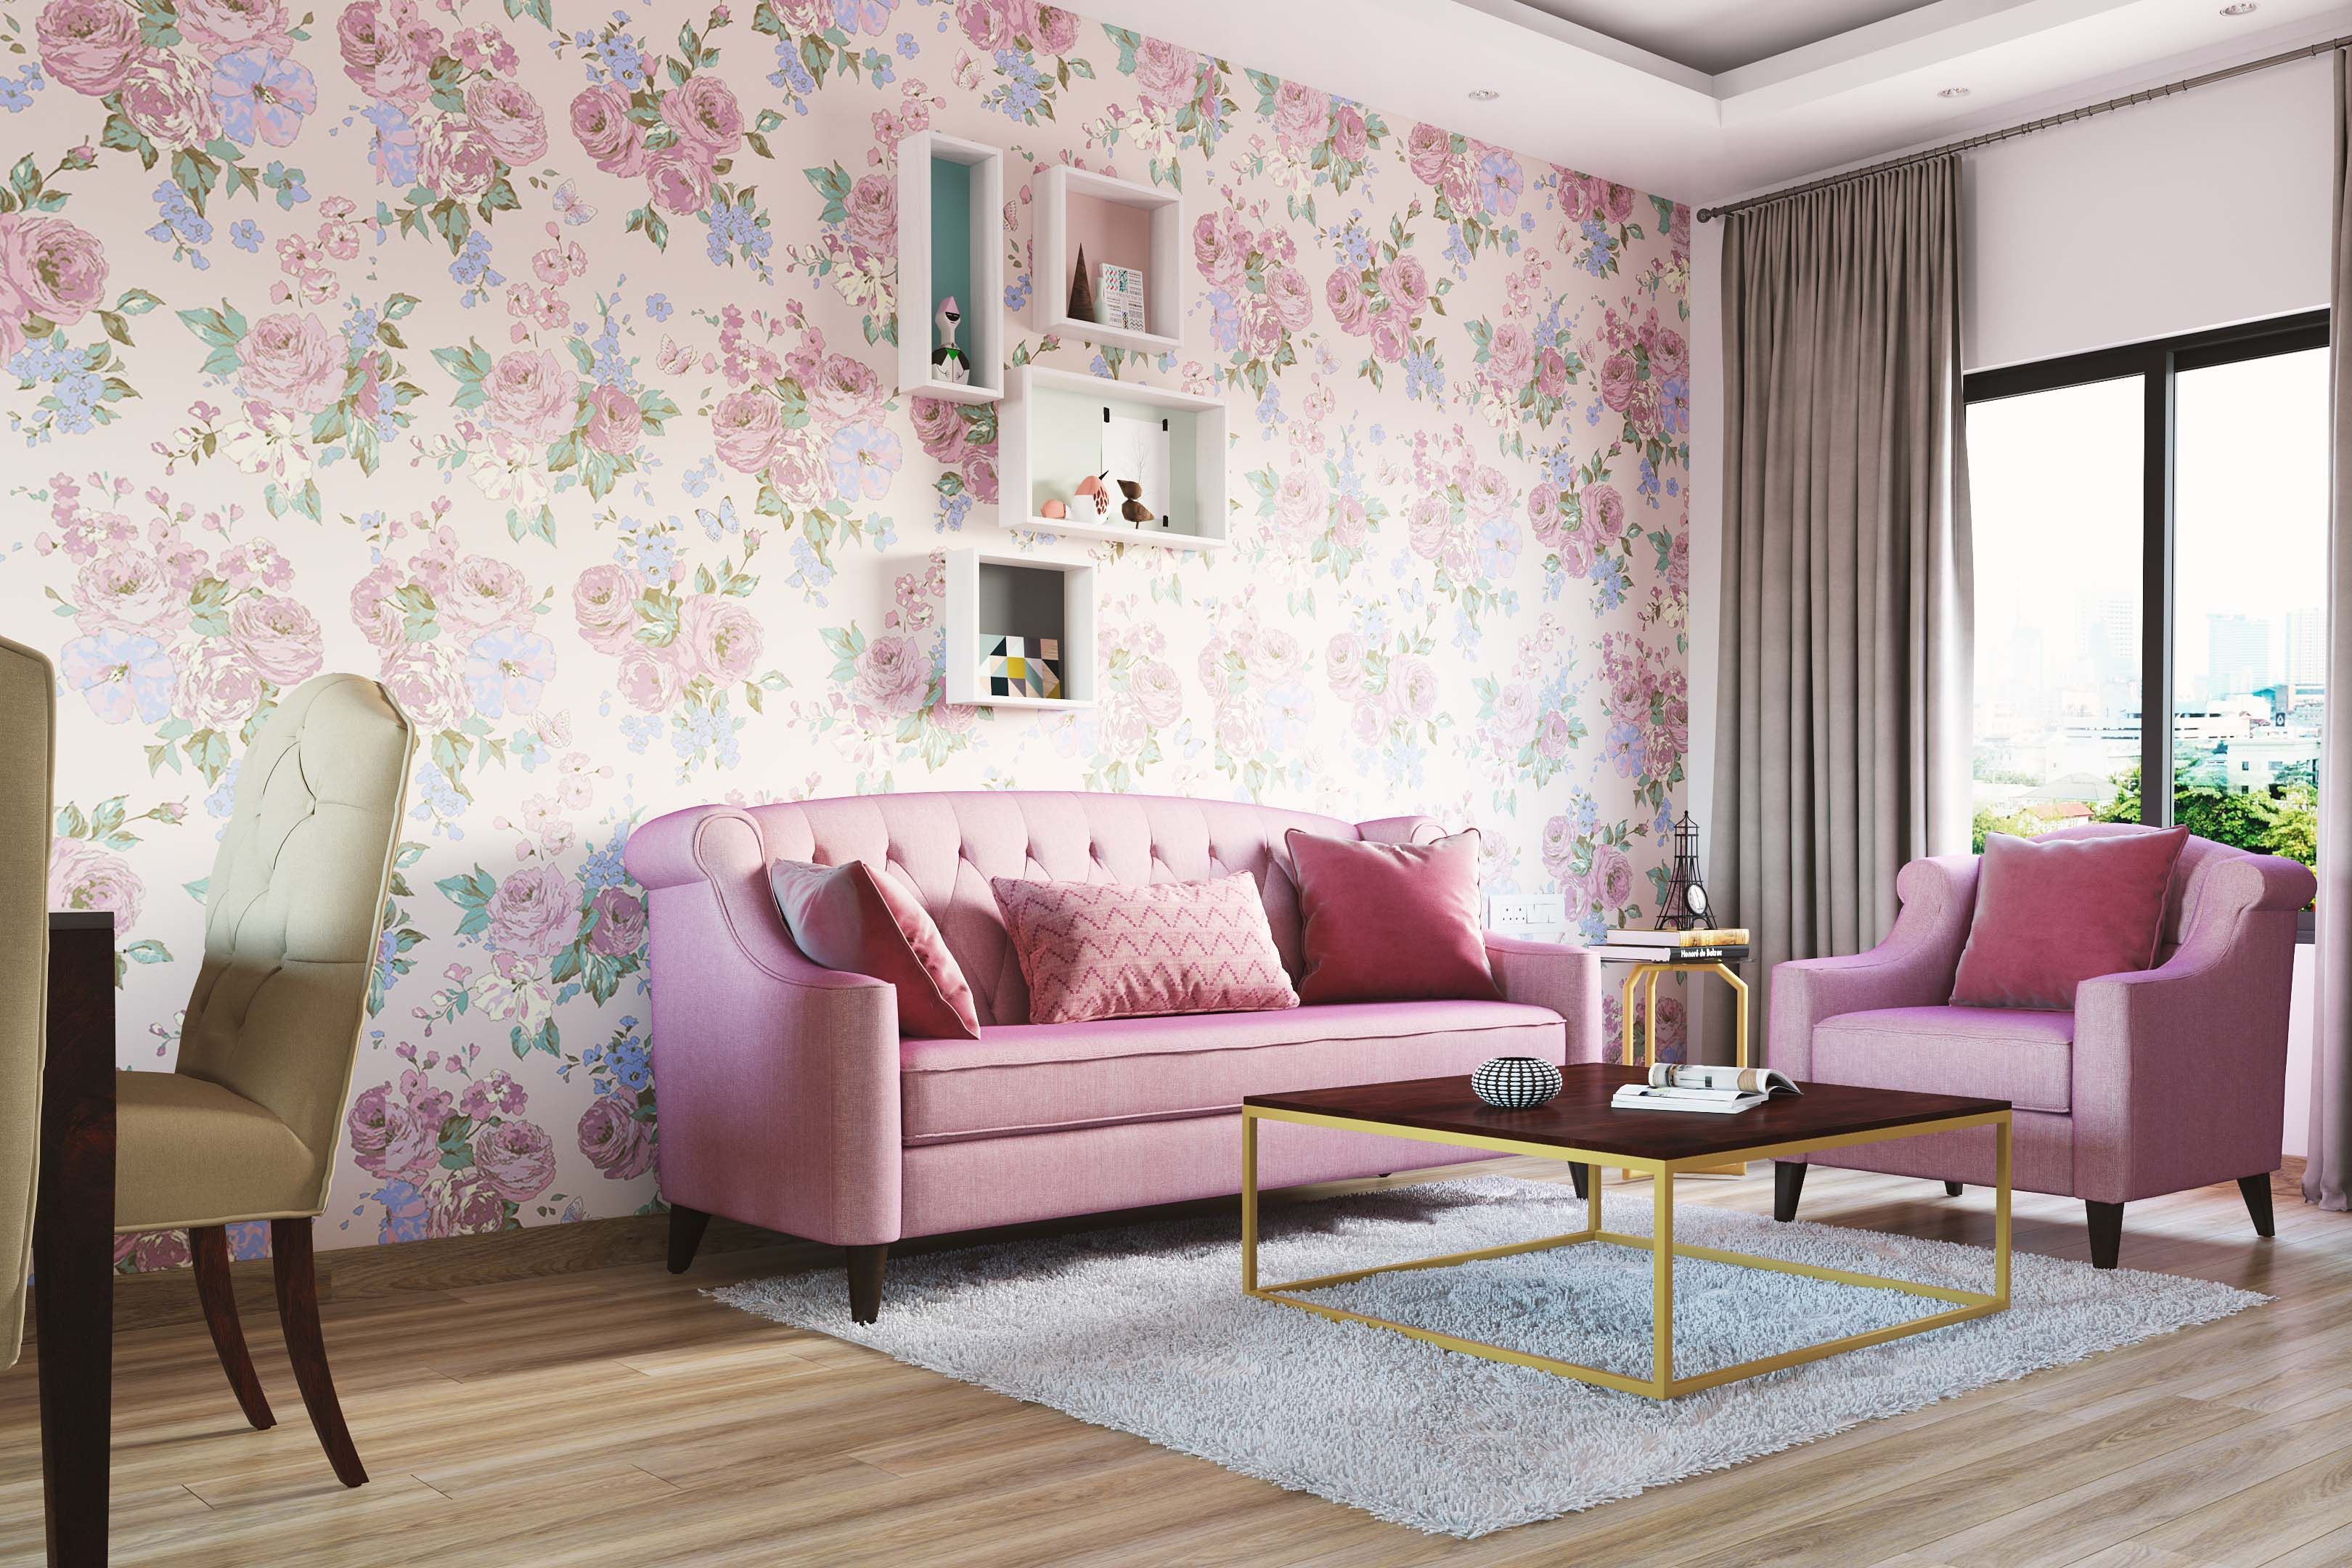 Vintage Pink Living Room Floral Wallpaper Design